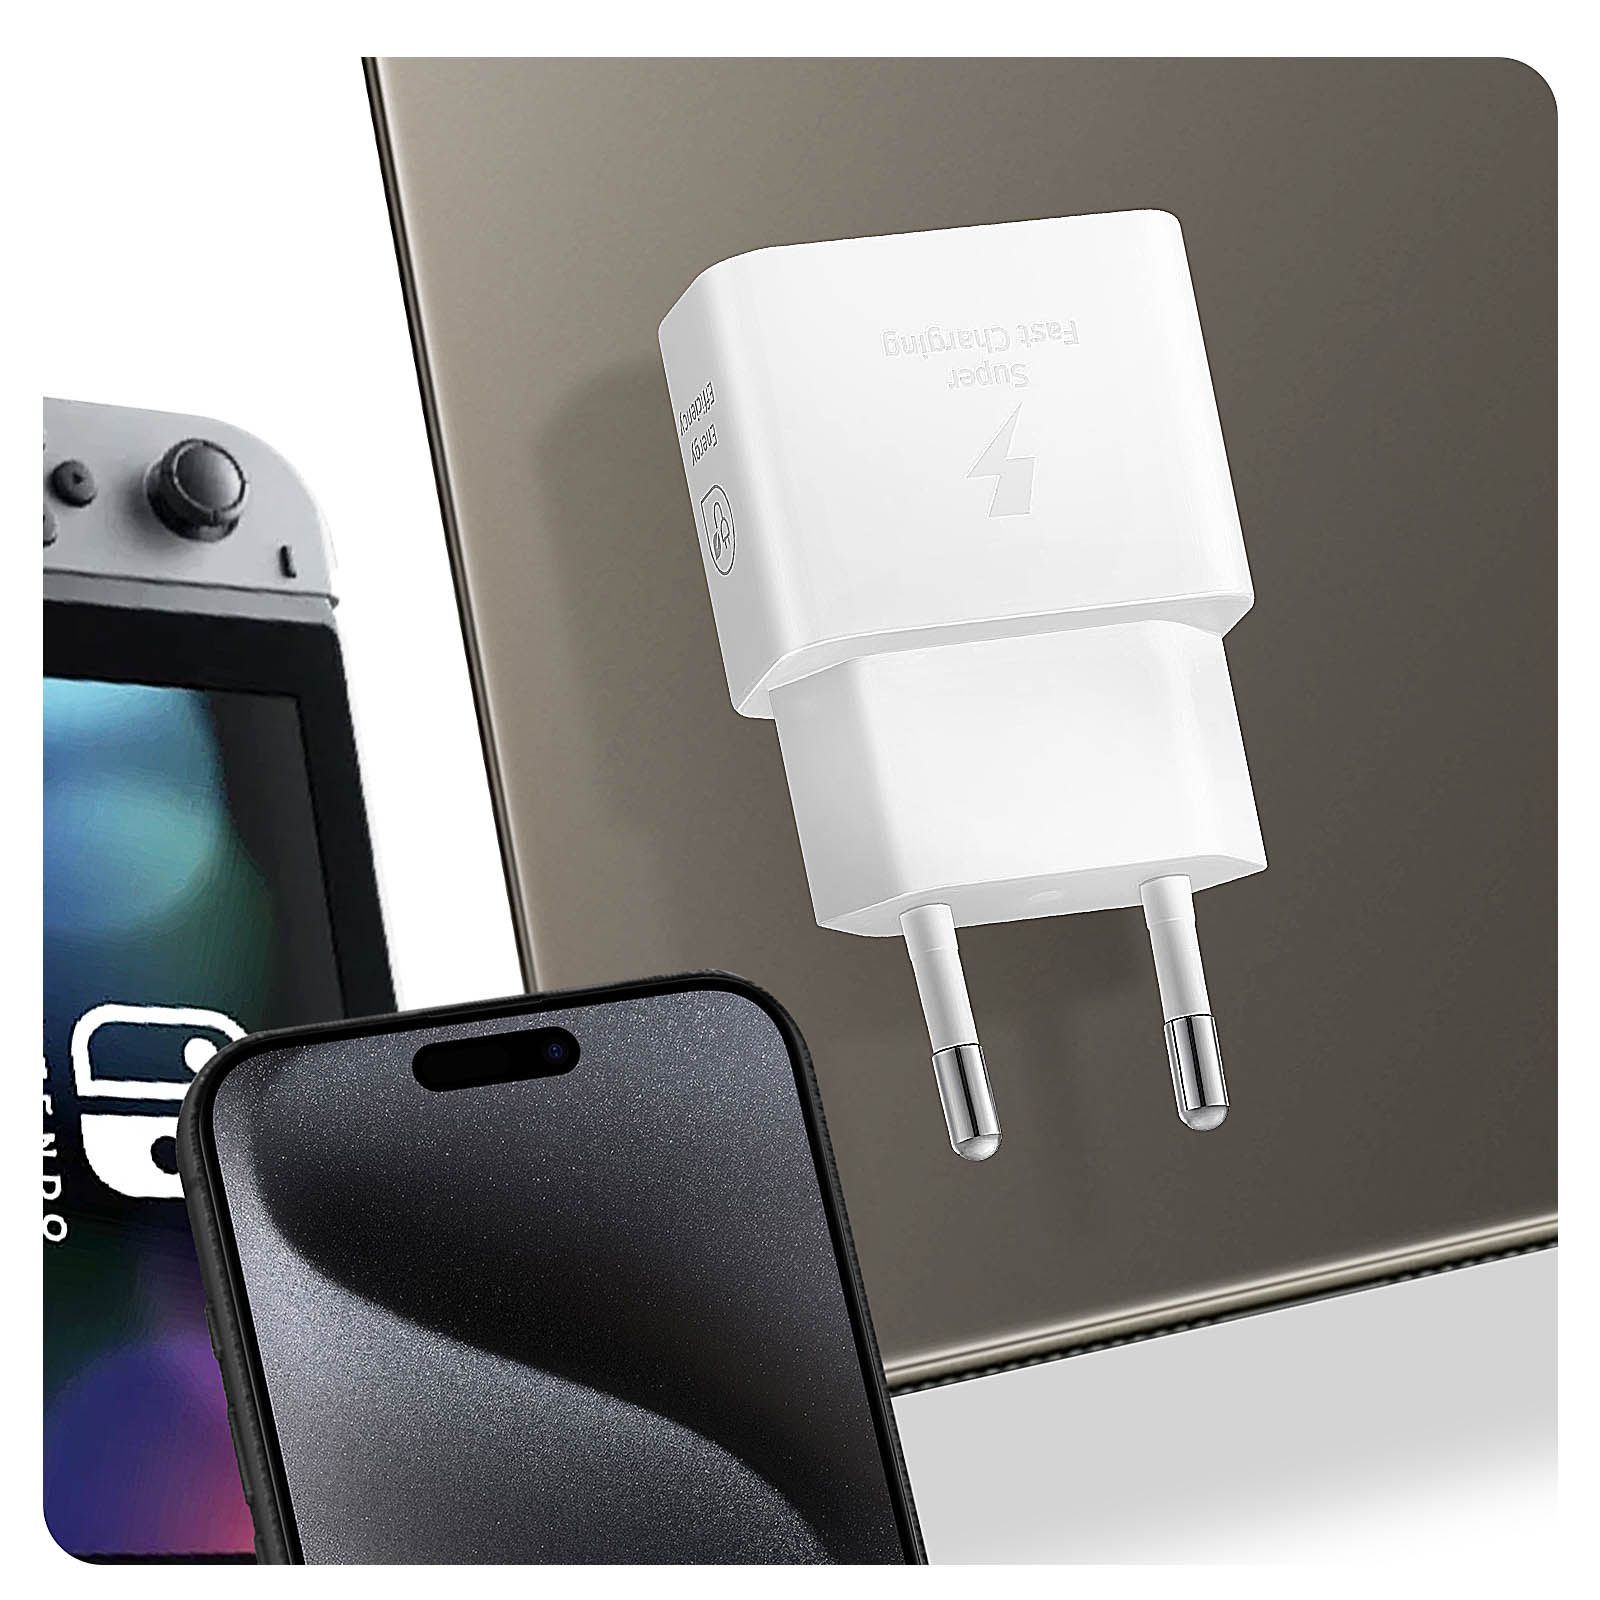 Chargeur secteur USB-C 25W, Technologie GaN - Produit officiel Samsung,  Blanc